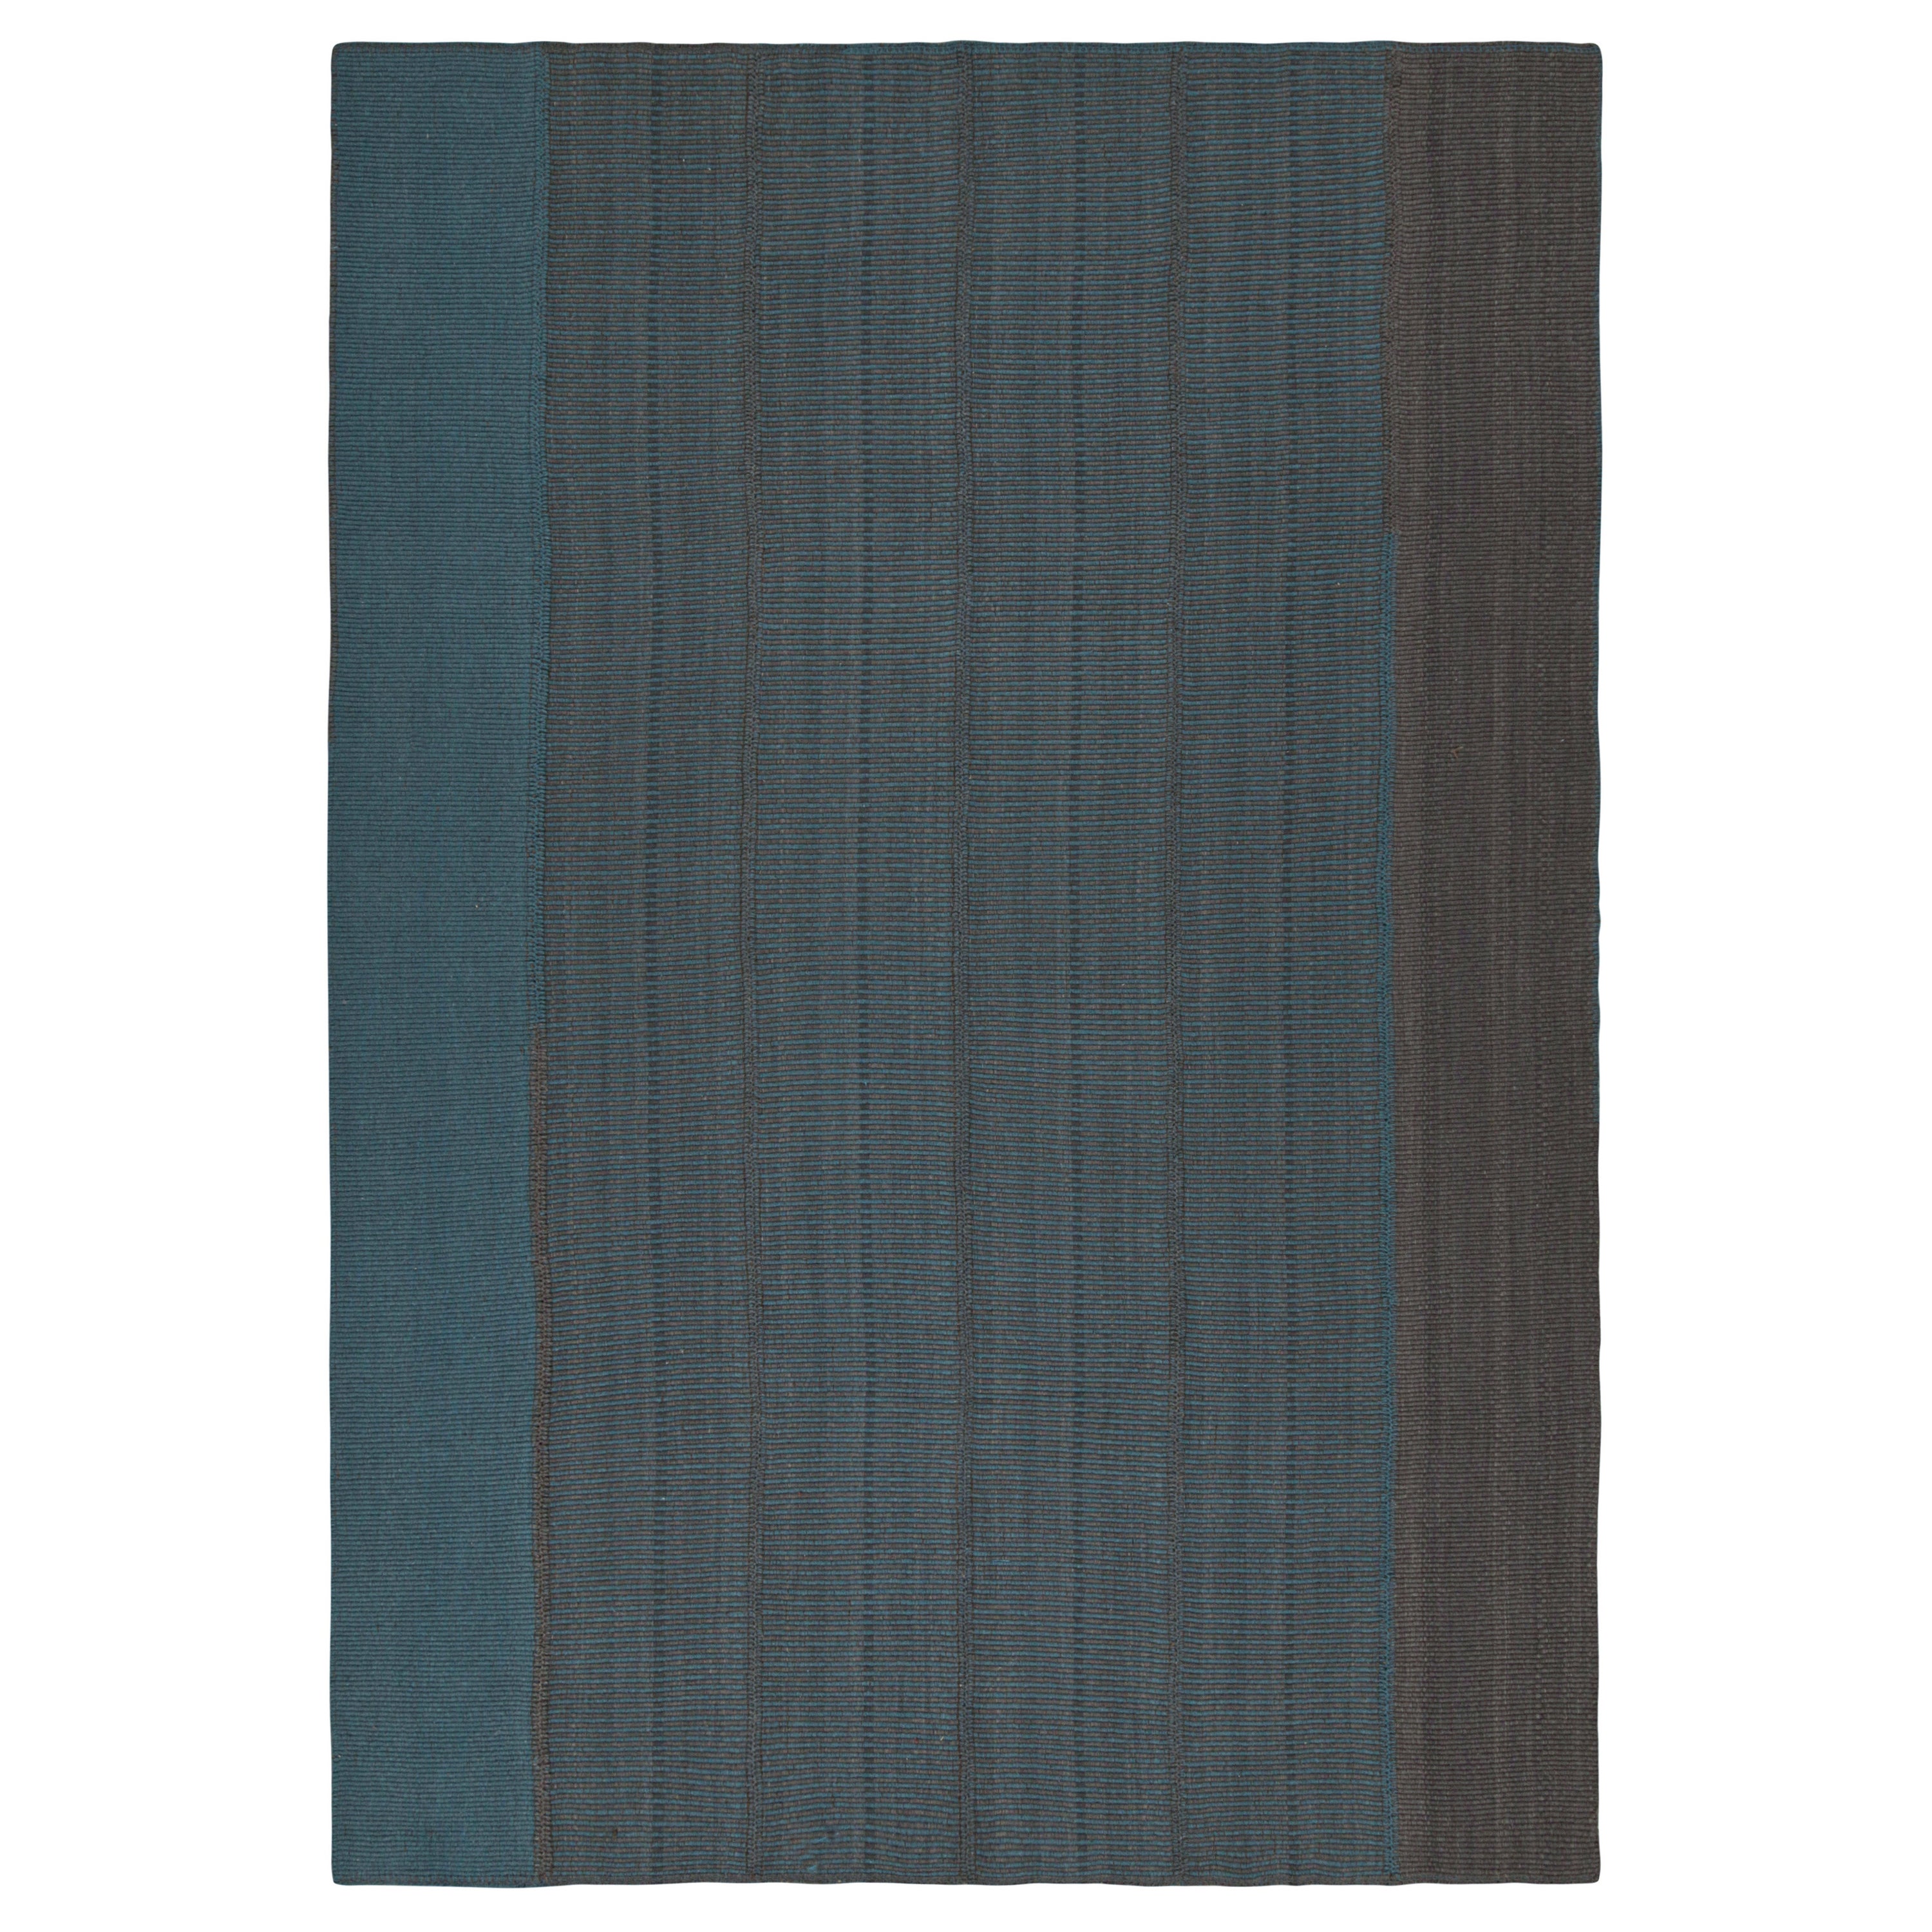 Rug & Kilim's Contemporary Kilim in Blau mit grauen Streifen und braunen Akzenten